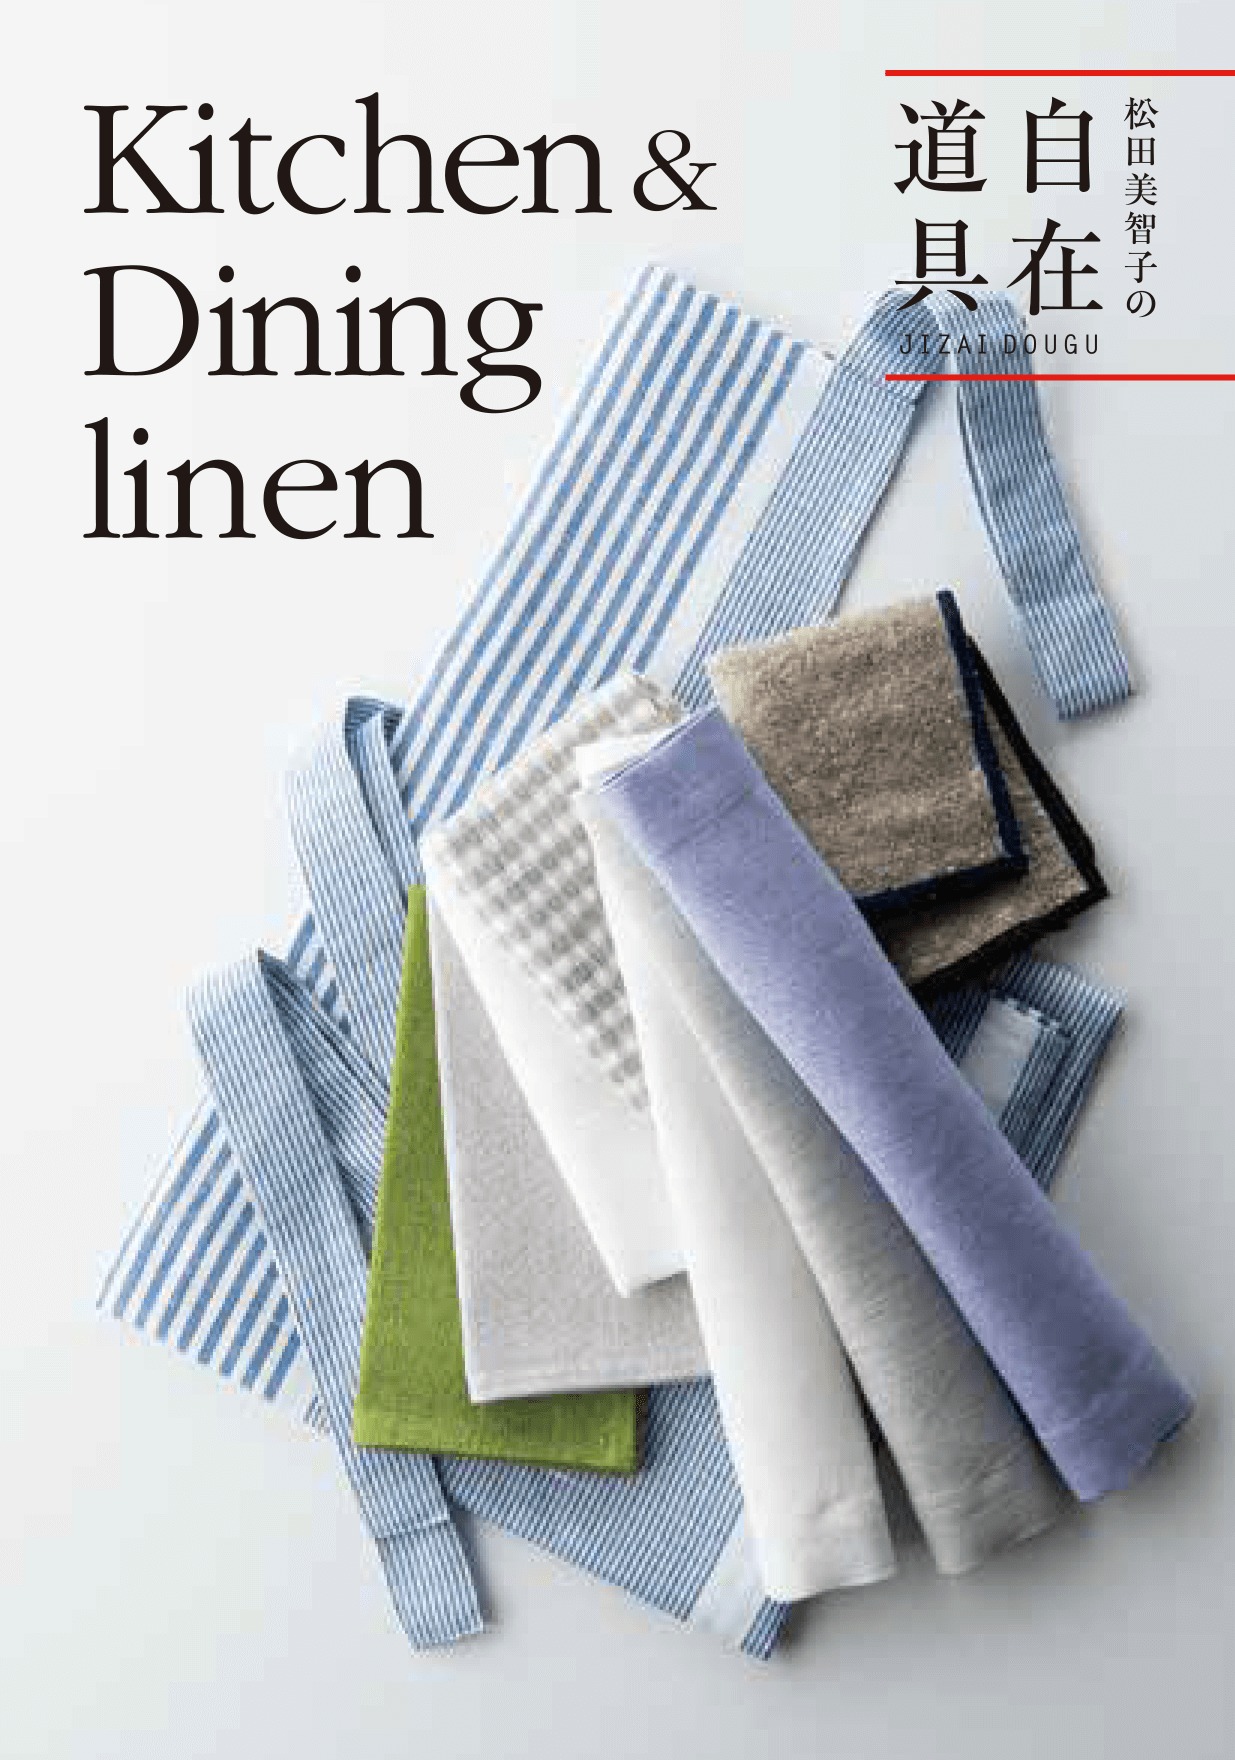 KITCHEN & DINING linen